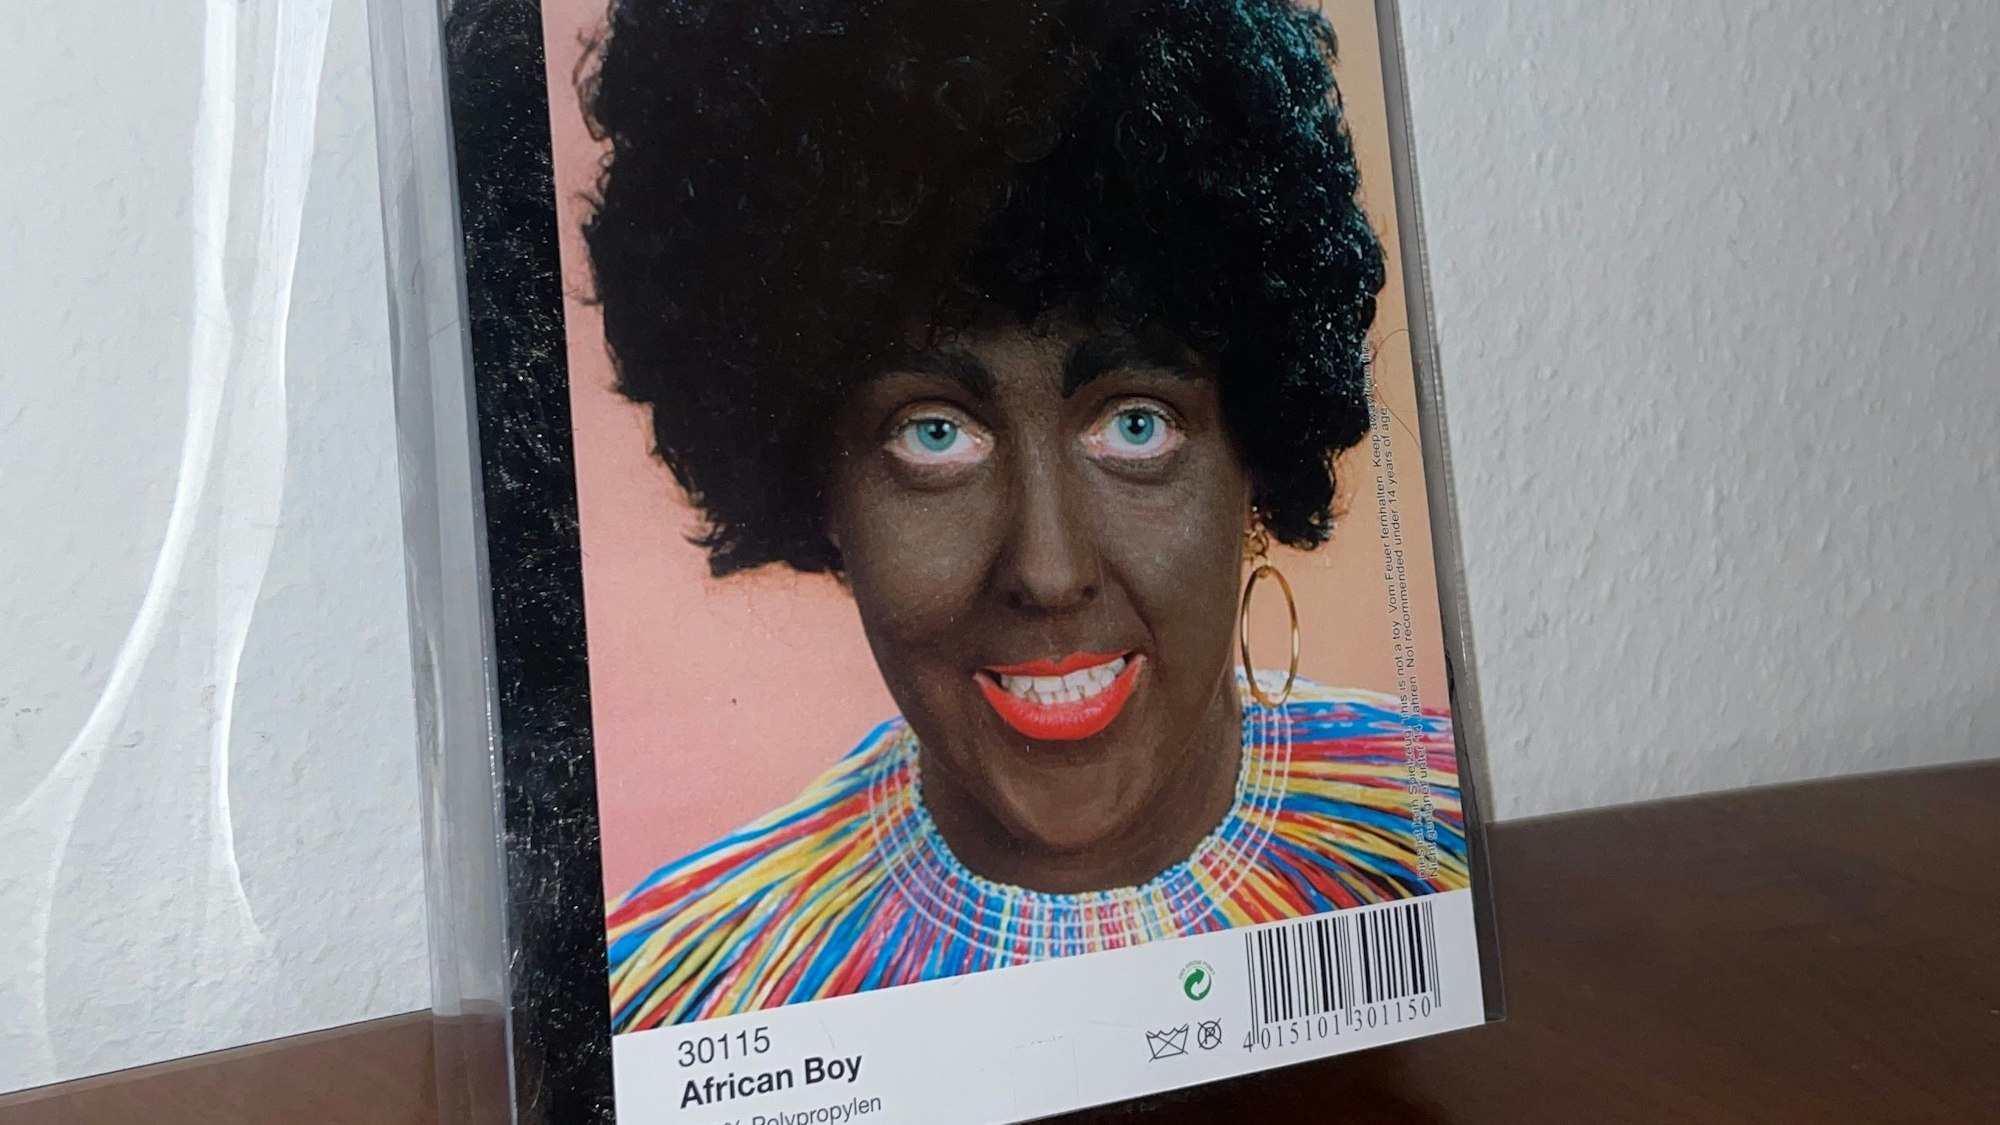 Eine Karnevalsperücke eines Kölner Kostümhändlers steht in der Kritik. Der Produktname „African Boy“ und die Beschminkung der Person haben eine rassistische Geschichte und bringen deshalb Empörung hervor.